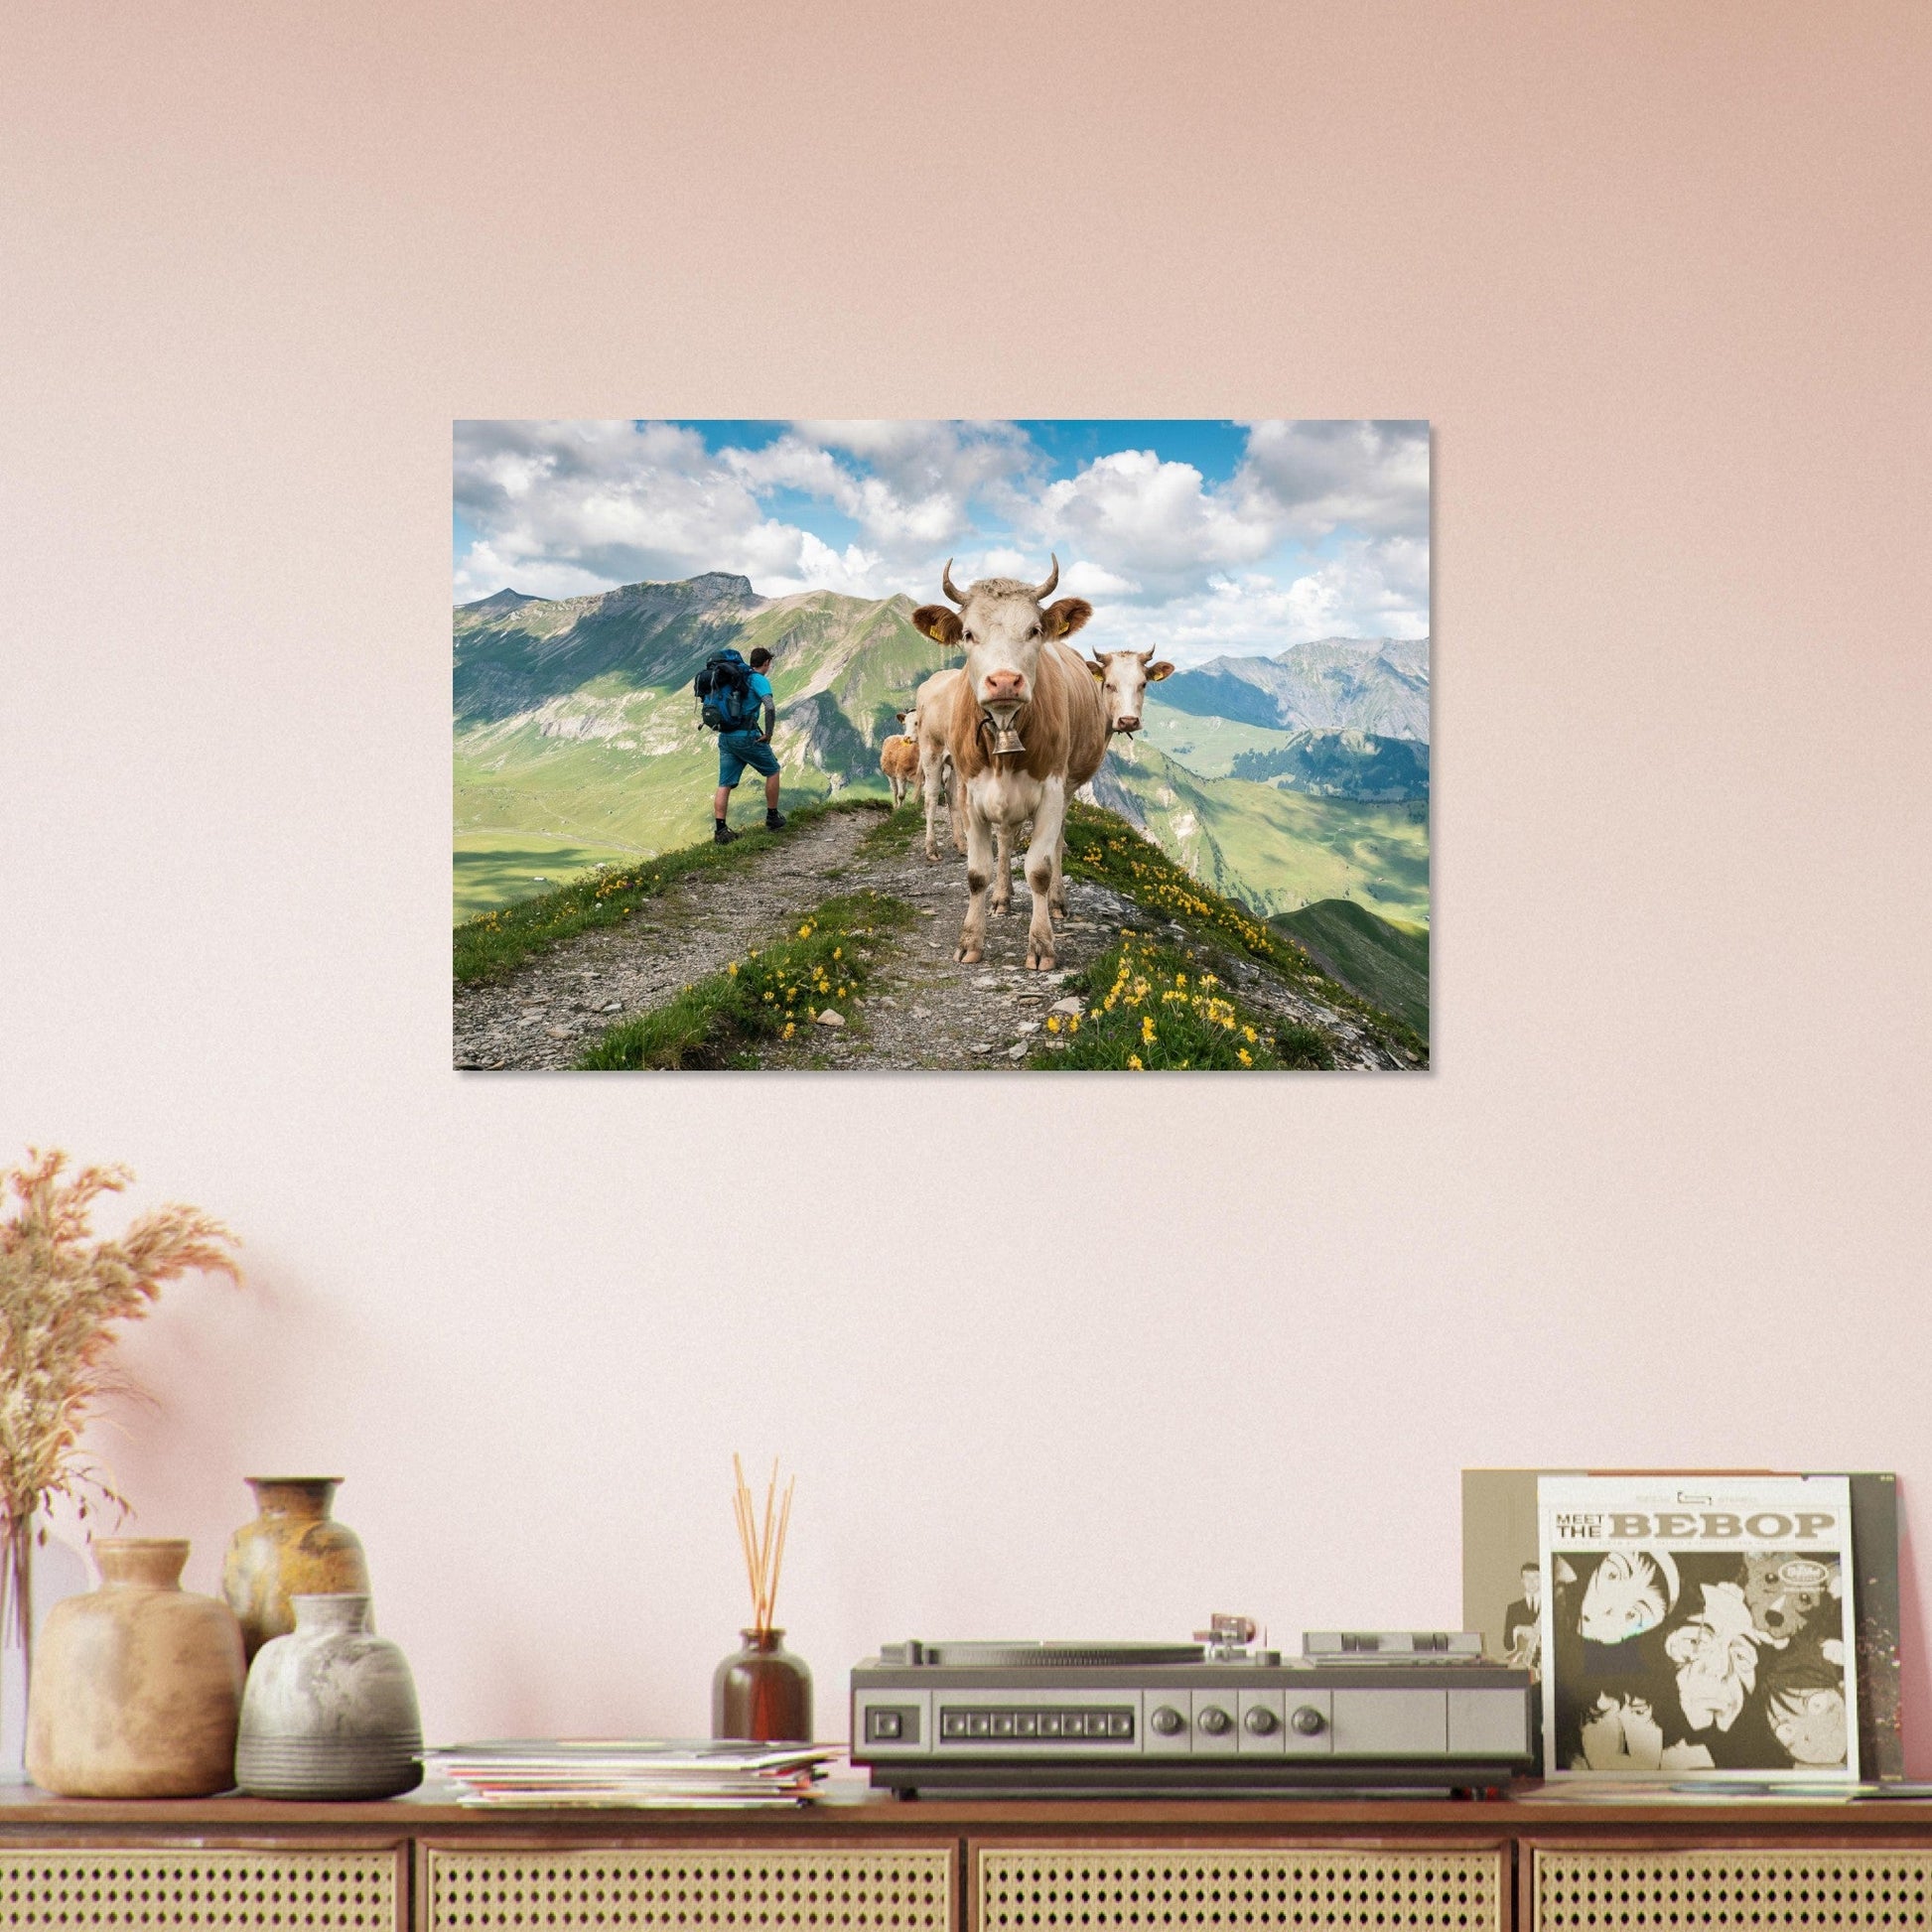 Vente Photo de vaches sur un chemin en Savoie #1 - Tableau photo paysage